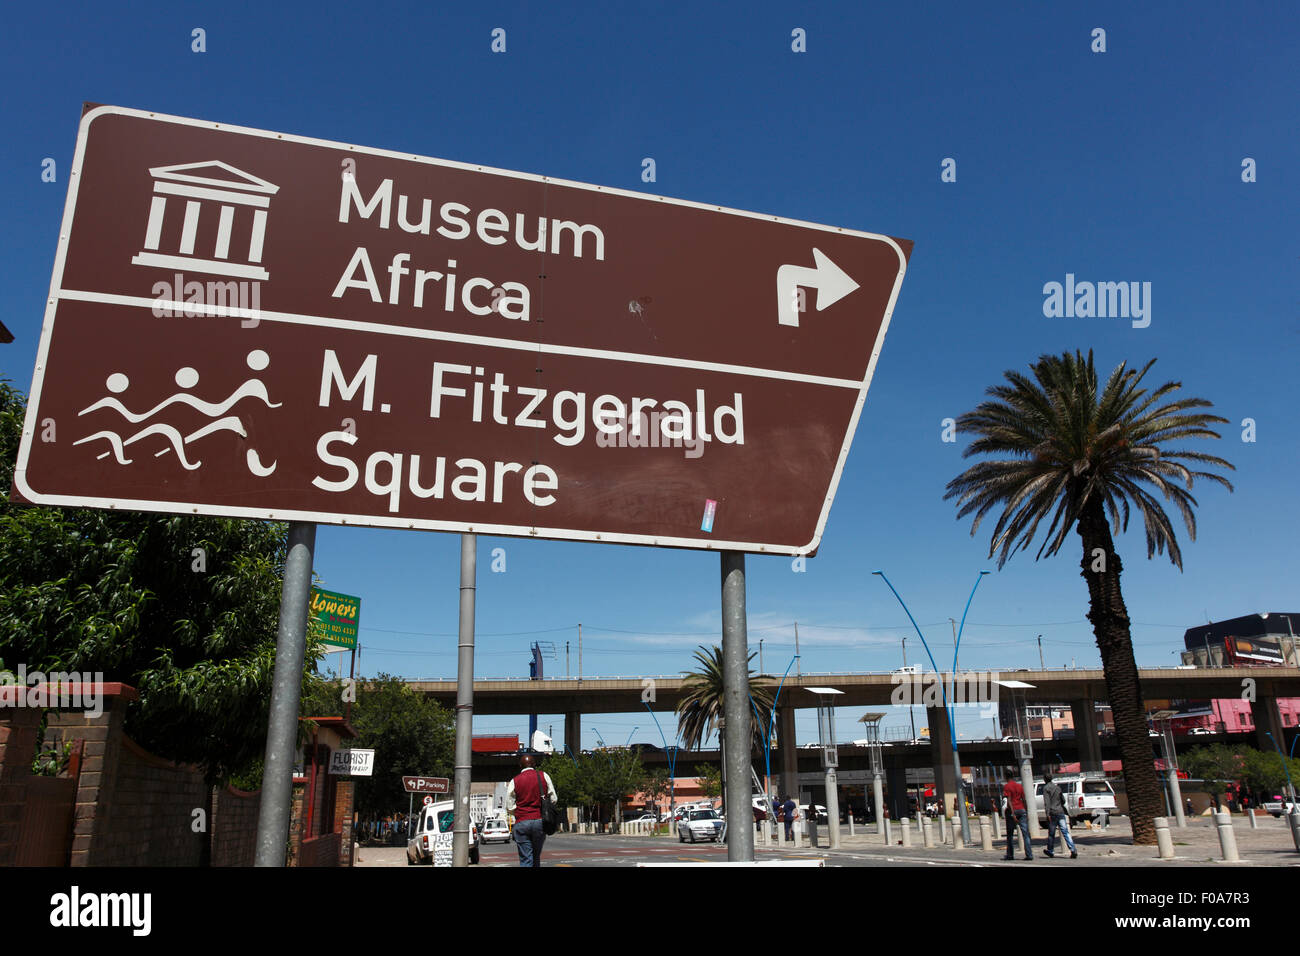 L'Afrique et du musée Mary Fitzgerald Square signe touristique. Newtown secteur du centre-ville de Johannesburg, Afrique du Sud. Photo par Zute Li Banque D'Images